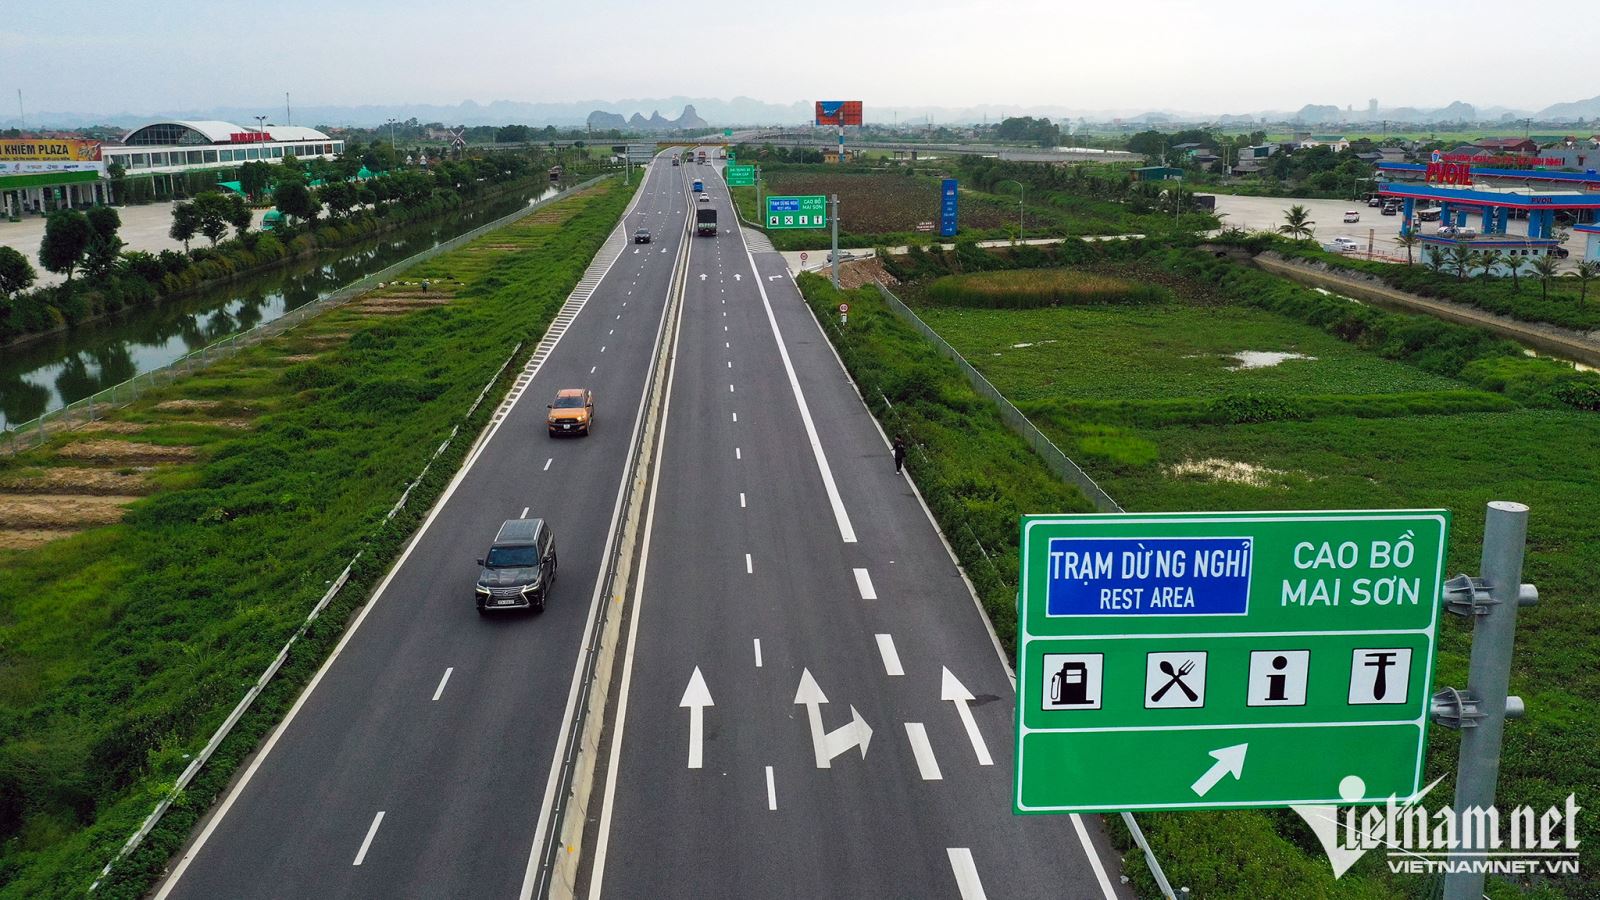 Điều khiến nhiều lái xe 'thấy lạ' trên cao tốc Cao Bồ - Mai Sơn